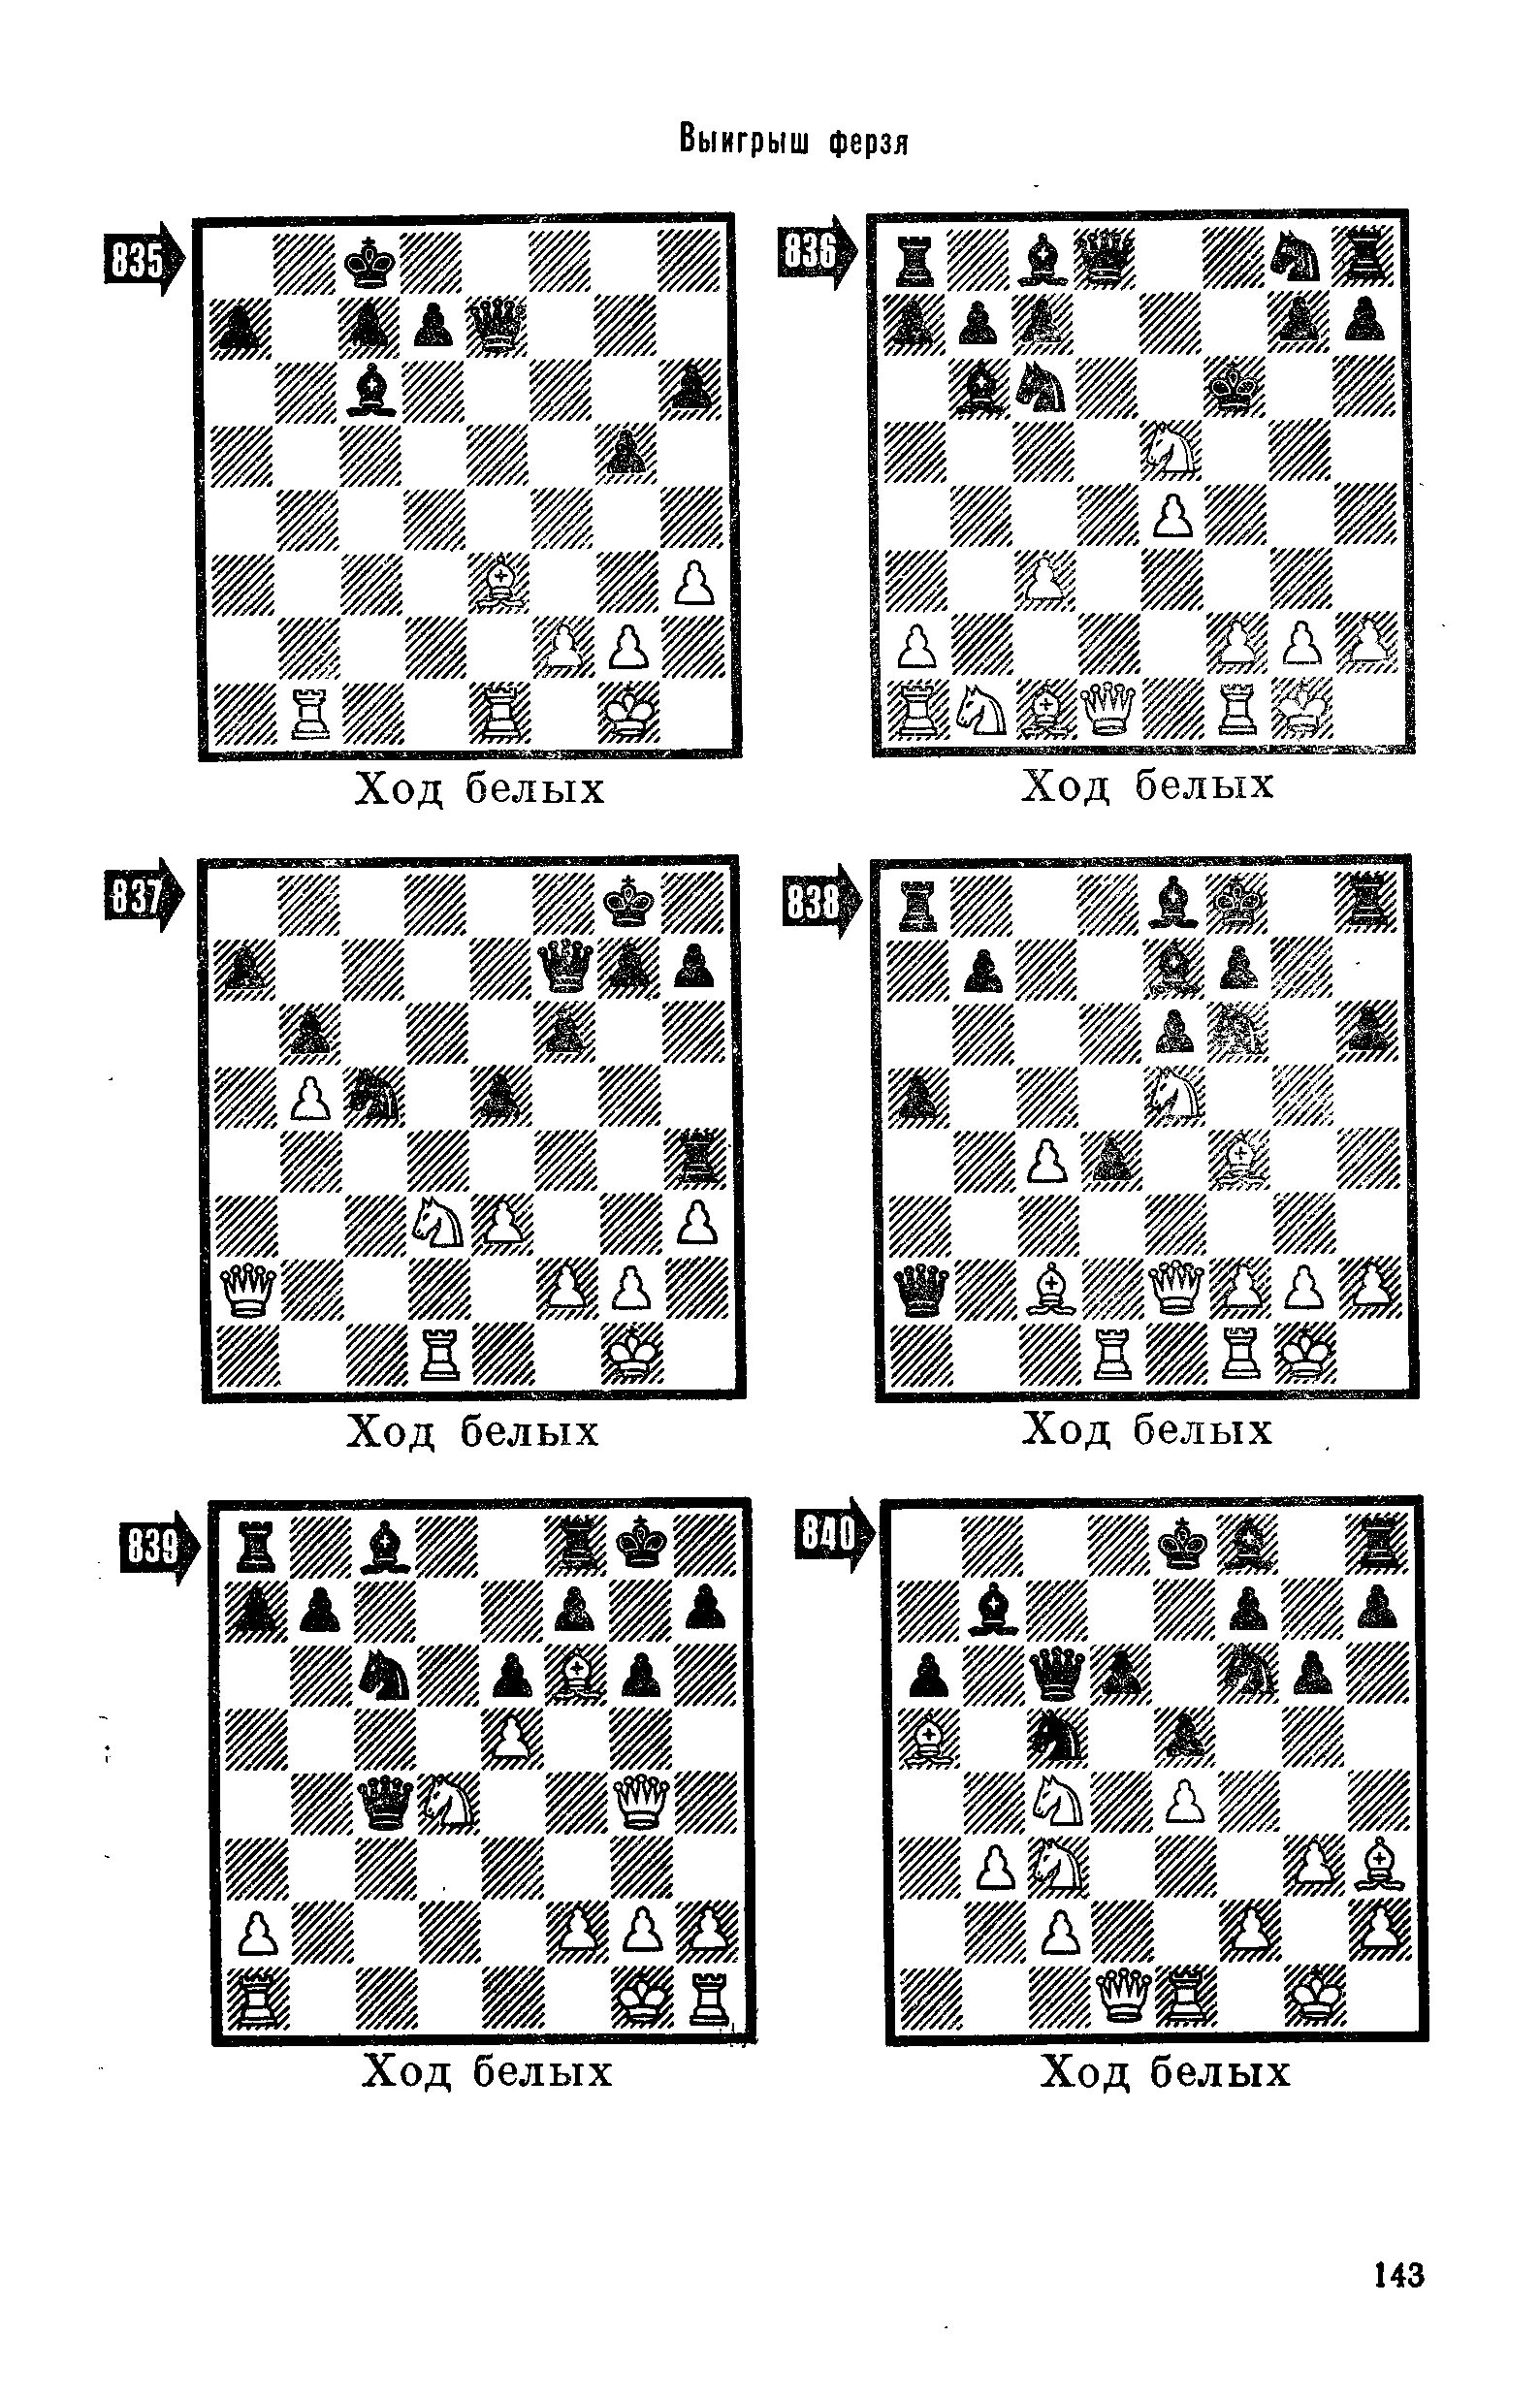 Мат комбинации. Задачи по шахматам. Мат за 2 хода в шахматах. Шахматные комбинации сложные. Шахматные ходы комбинации для начинающих.